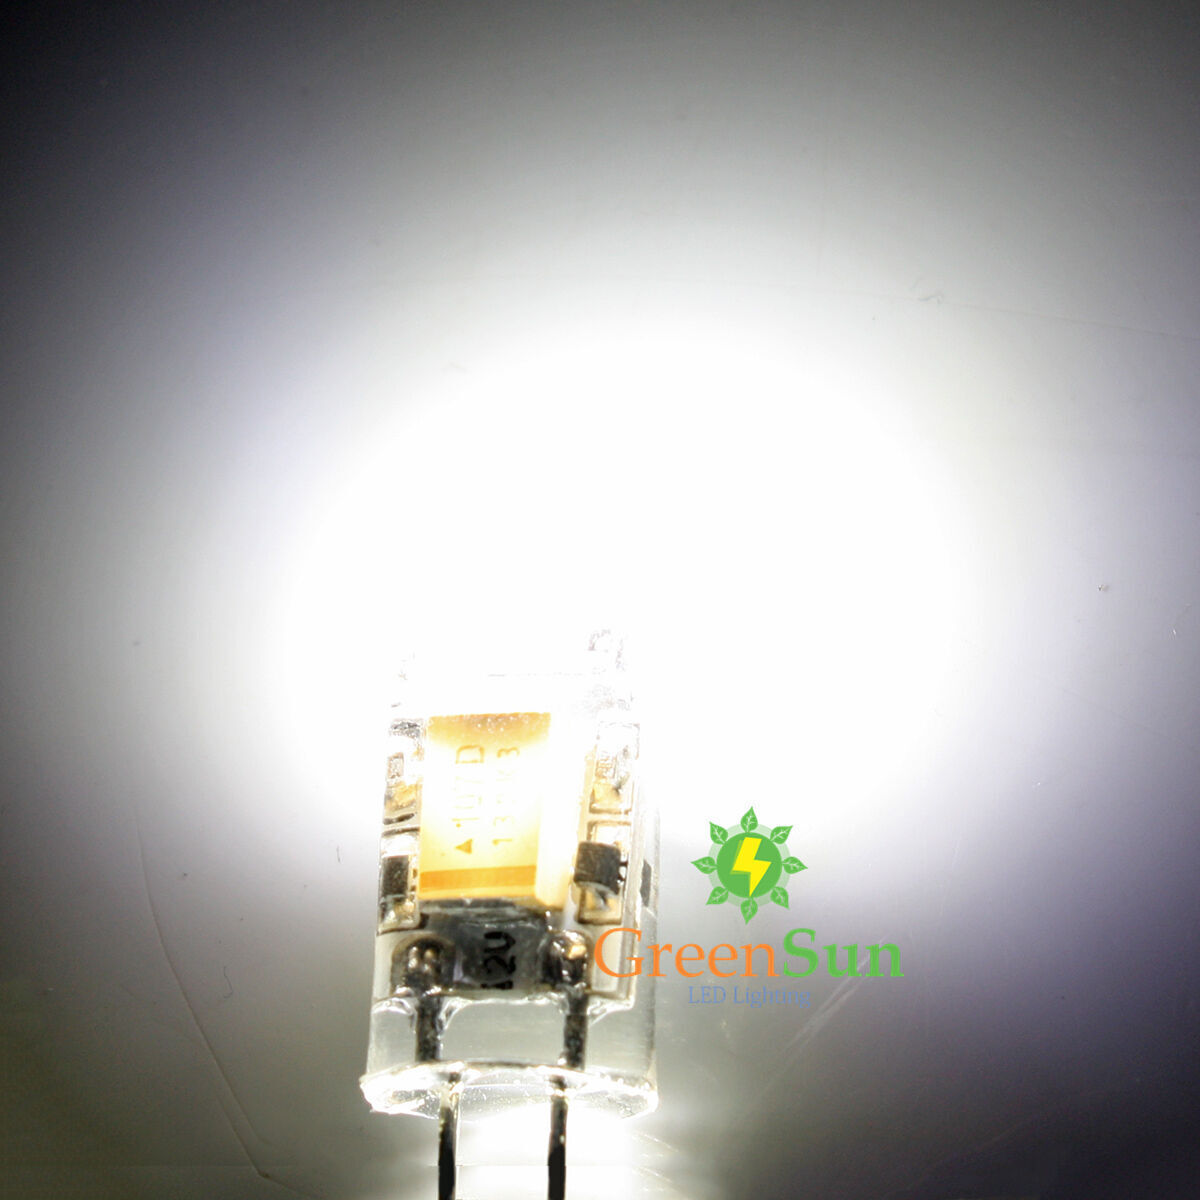 4X G4 LED Cob 3W 12V Bulb, Dimmable Warm White – LadybirdLane Decor